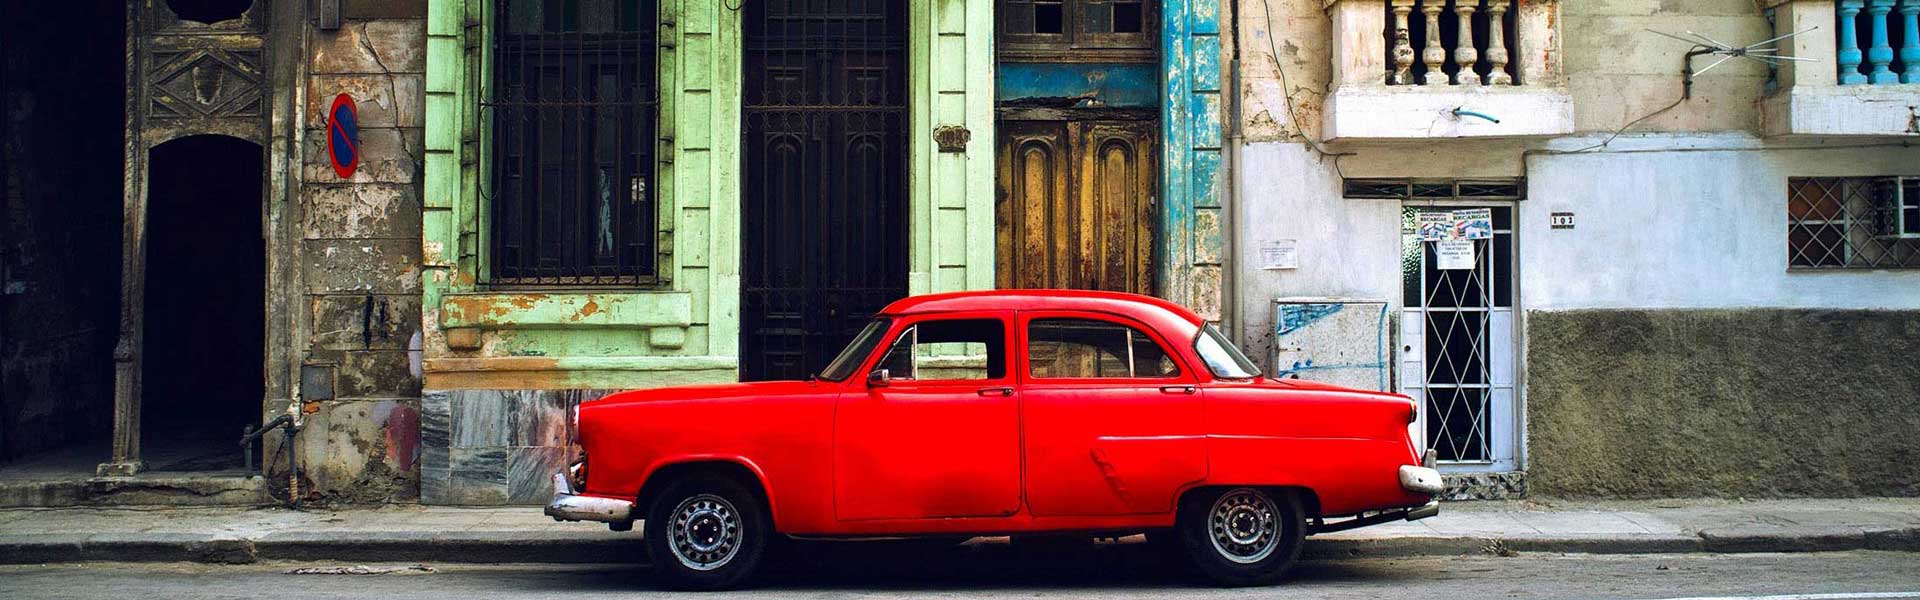 Voyage Cuba : Ancienne automobile rouge à la Havane Cuba